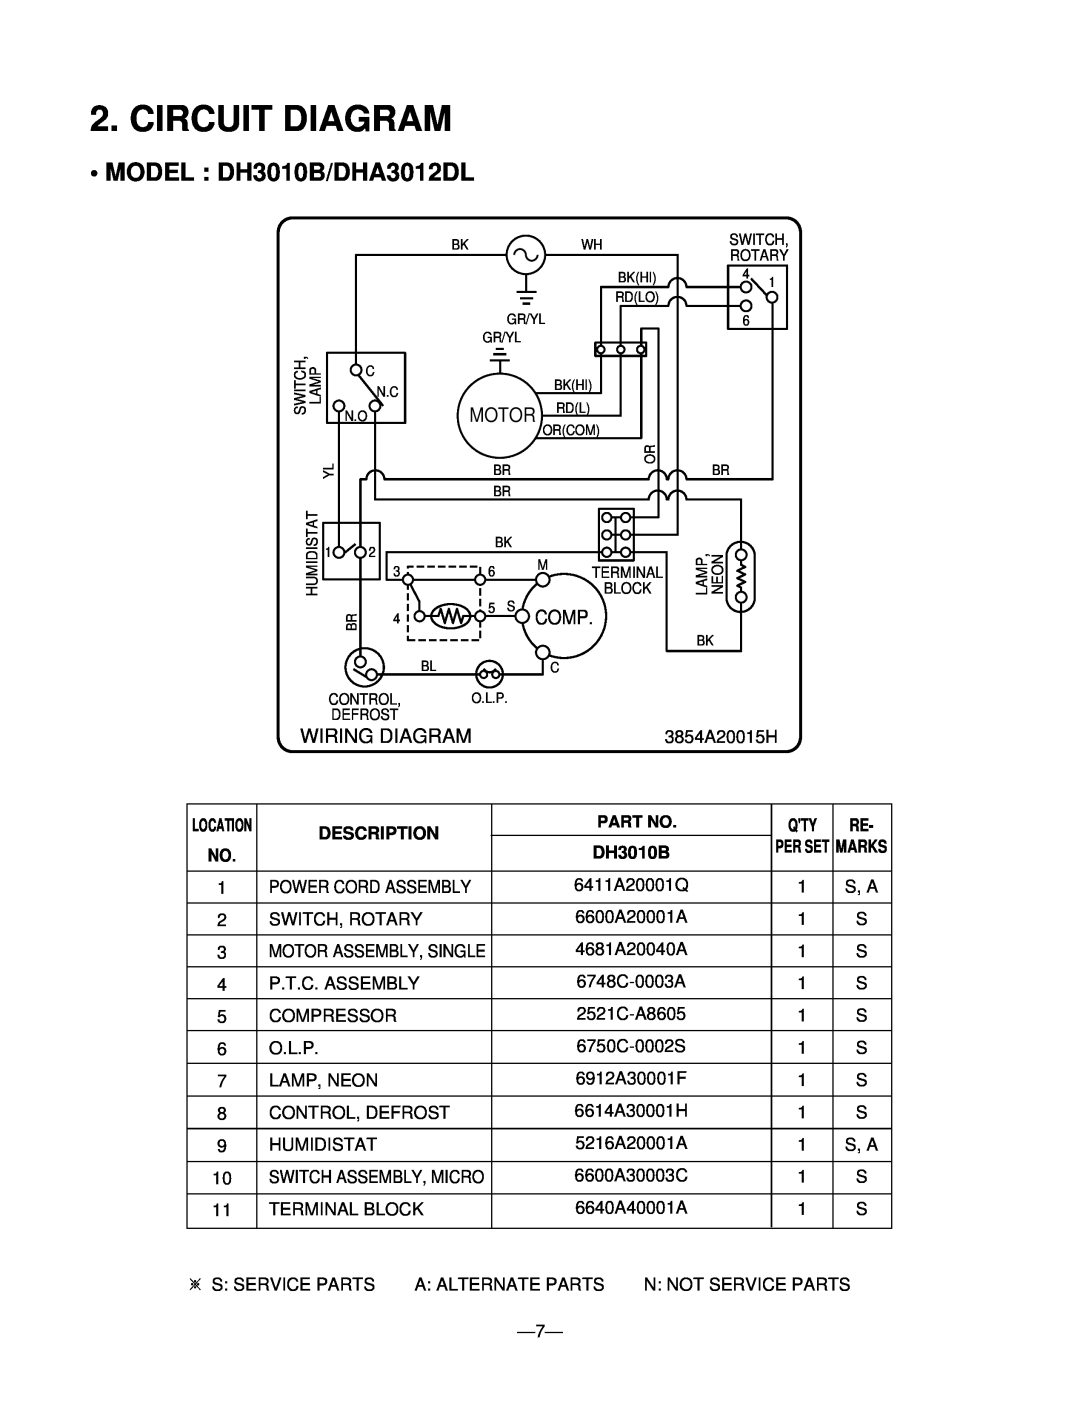 Goldstar DH5010B, DHA4012DL, DHA5012DL Circuit Diagram, MODEL DH3010B/DHA3012DL, Comp, Wiring Diagram, Description 